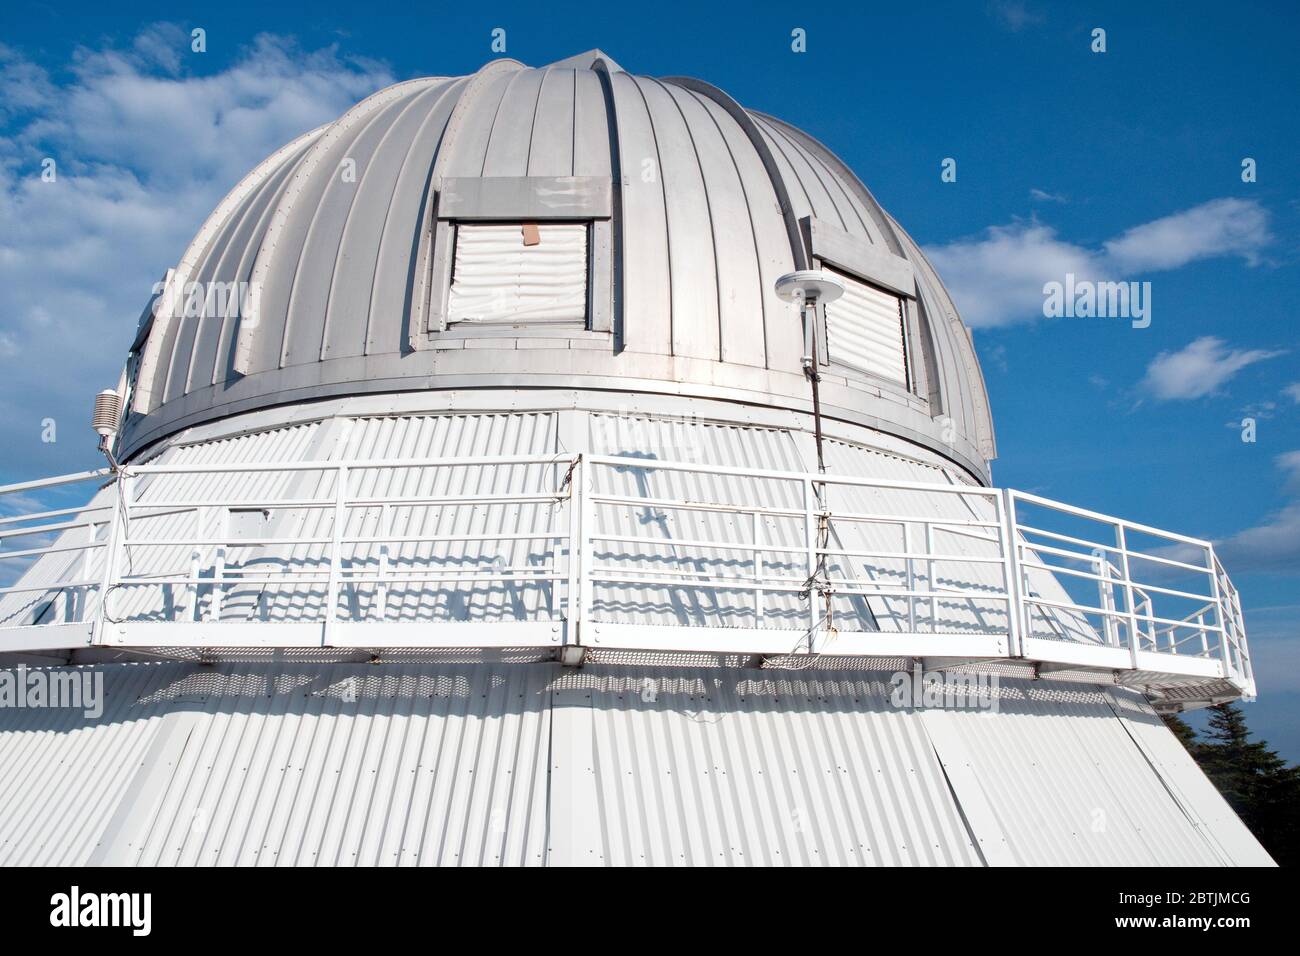 L'Observatoire astronomique du Mont-Mégantic dans la réserve de ciel sombre du Parc national du Mont-Mégantic, Appalachia, Cantons de l'est, Québec, Canada. Banque D'Images